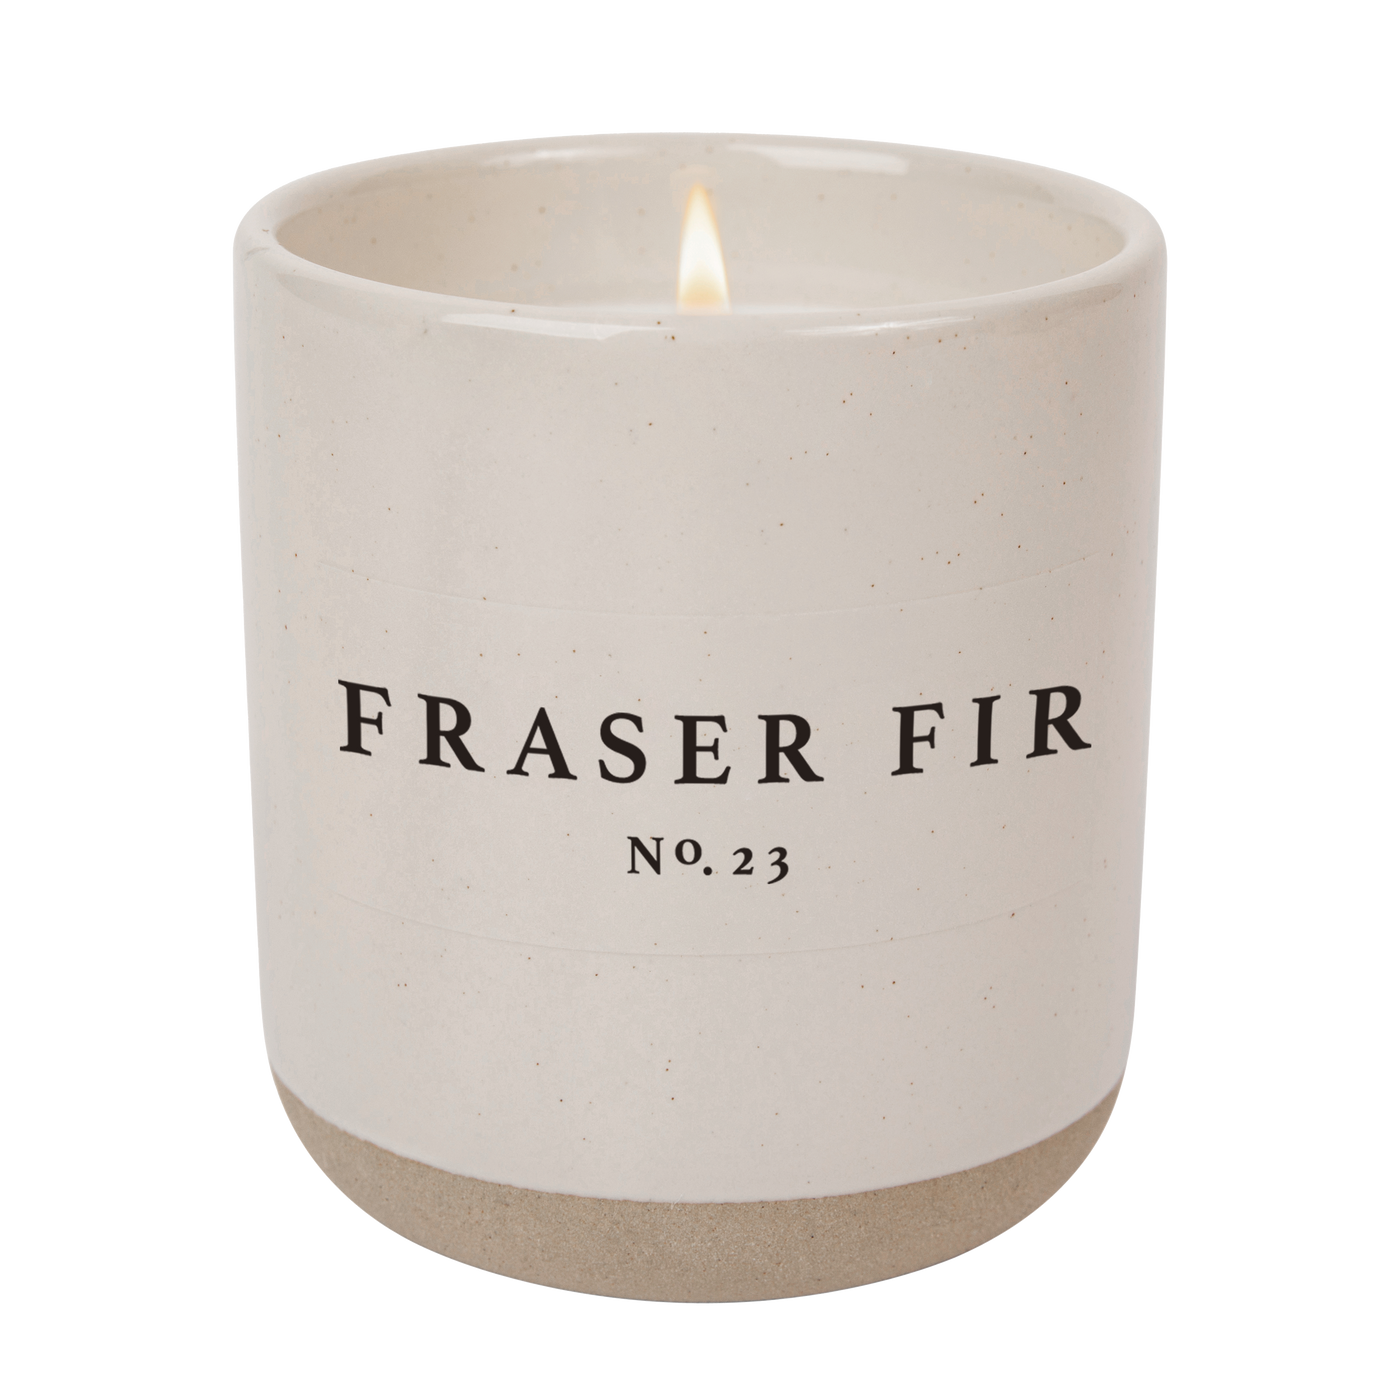 Fraser Fir Soy Candle - Cream Stoneware Jar - 12 oz